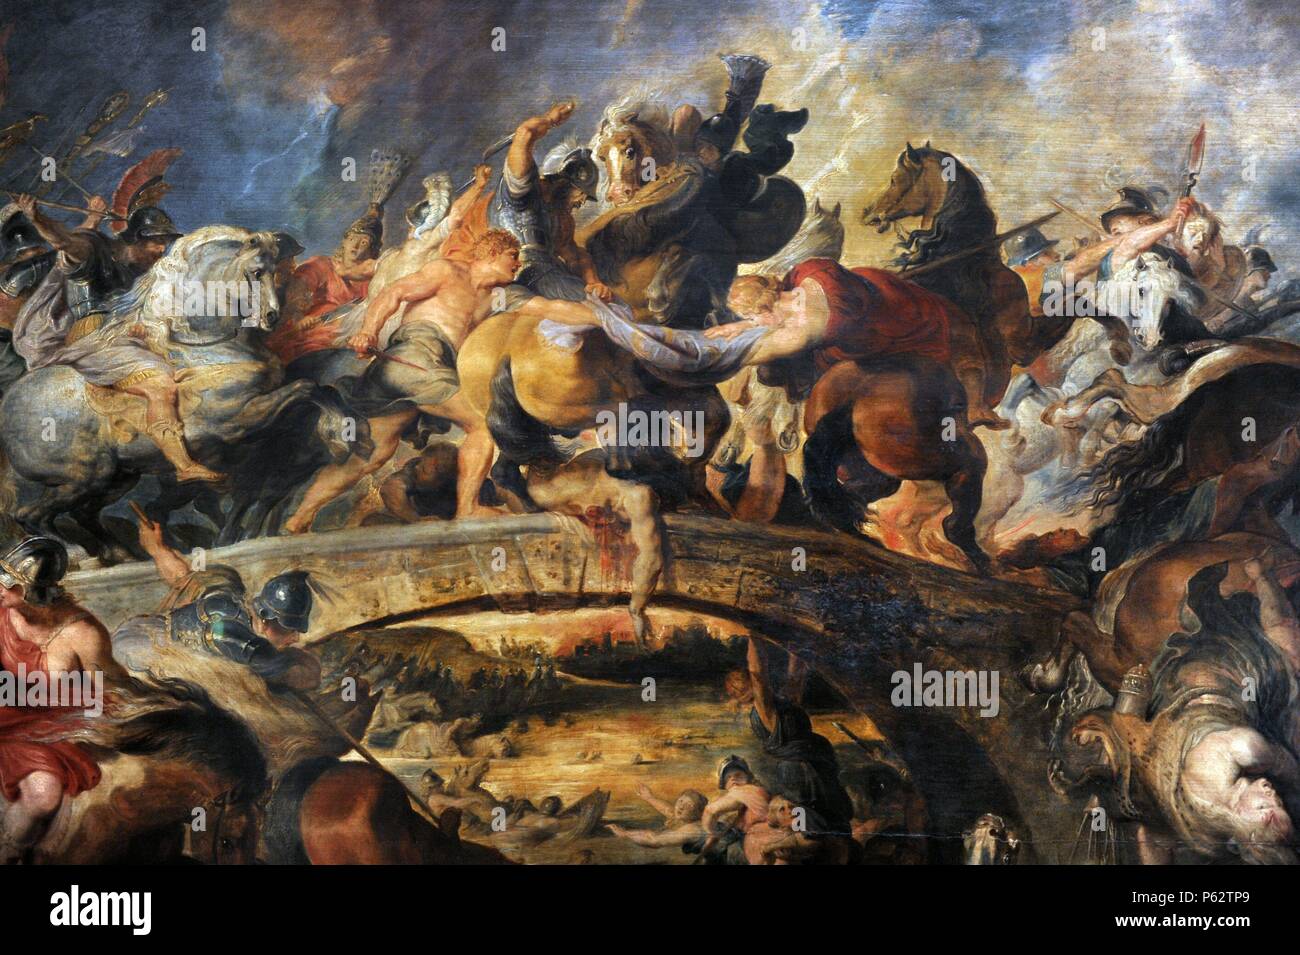 Peter Paul Rubens (1577-1640). El pintor flamenco. Batalla de las amazonas,  1616-1618. Alte Pinakothek. Munich. Alemania Fotografía de stock - Alamy